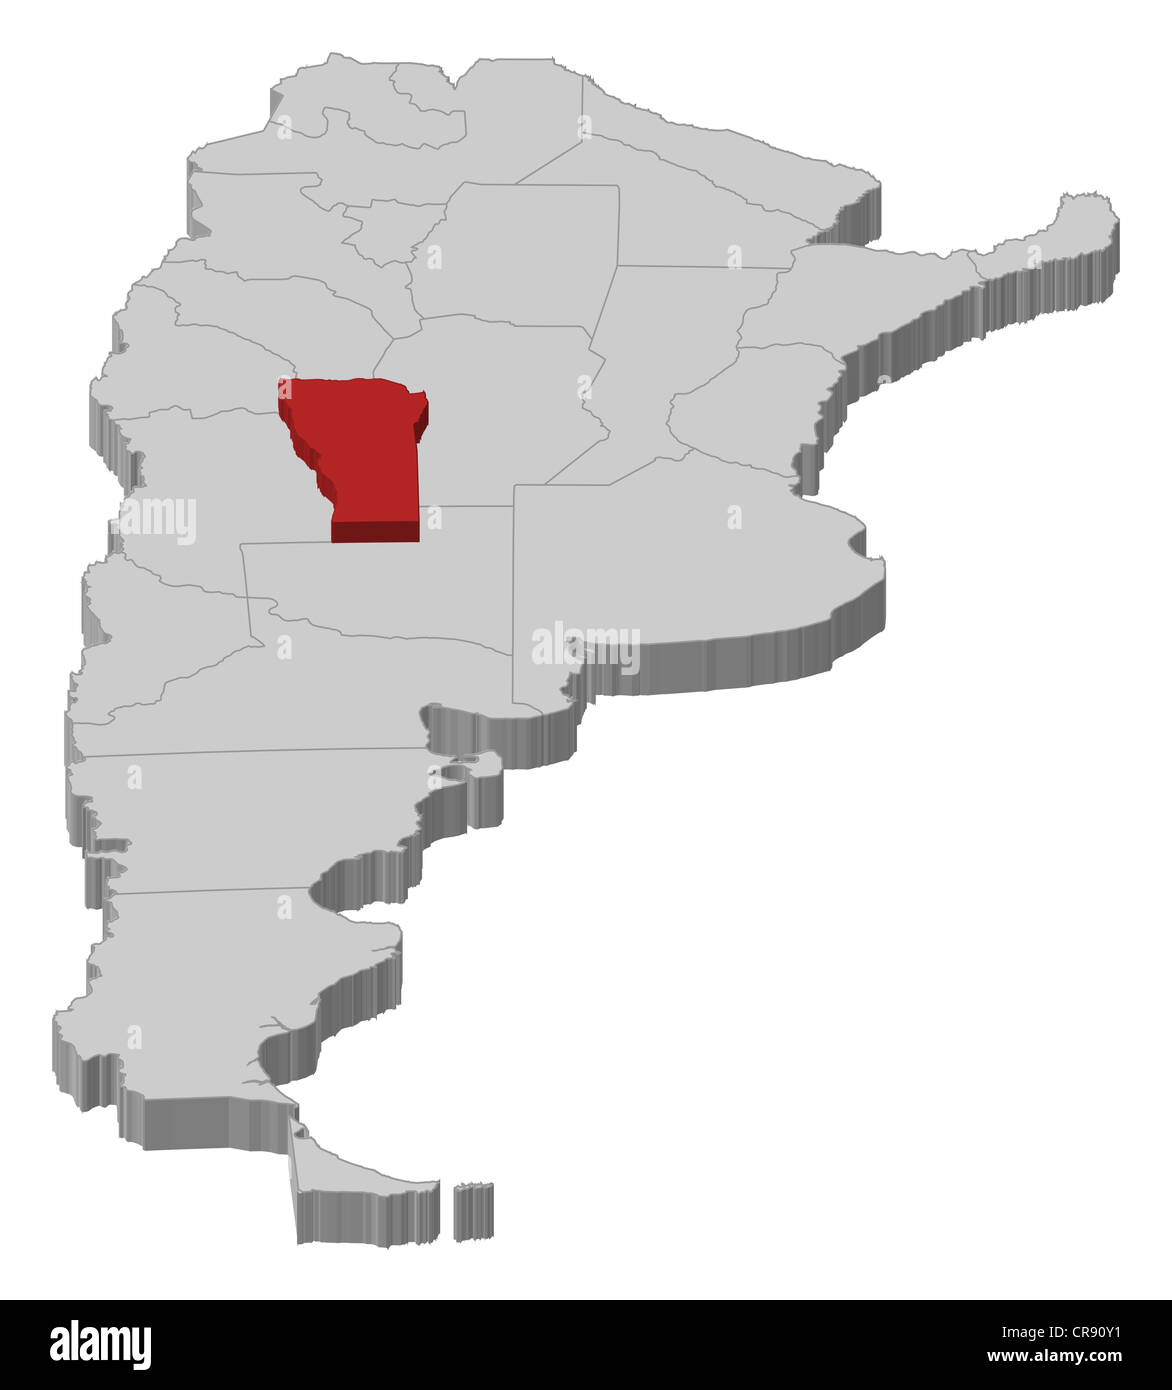 La Rioja (región de la Argentina, la República Argentina, en las